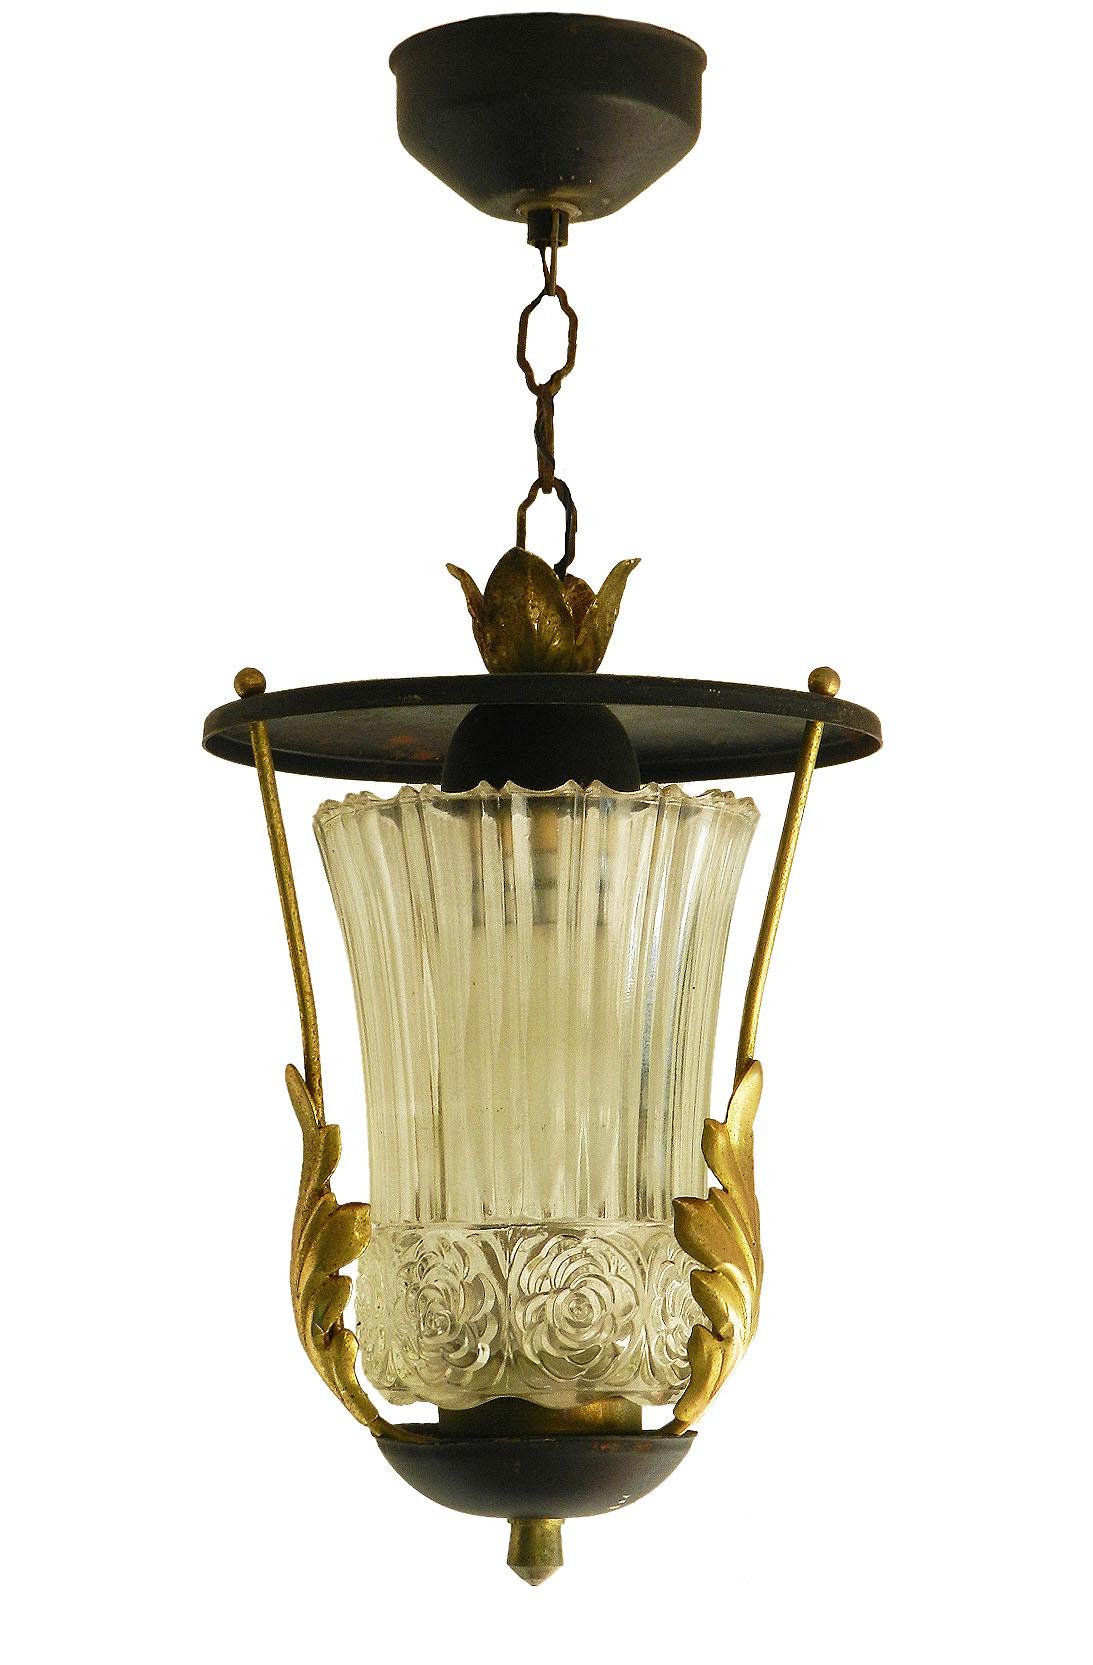 Mid-Century Modern Midcentury Pendant Light Lantern Attributed to Poillerat